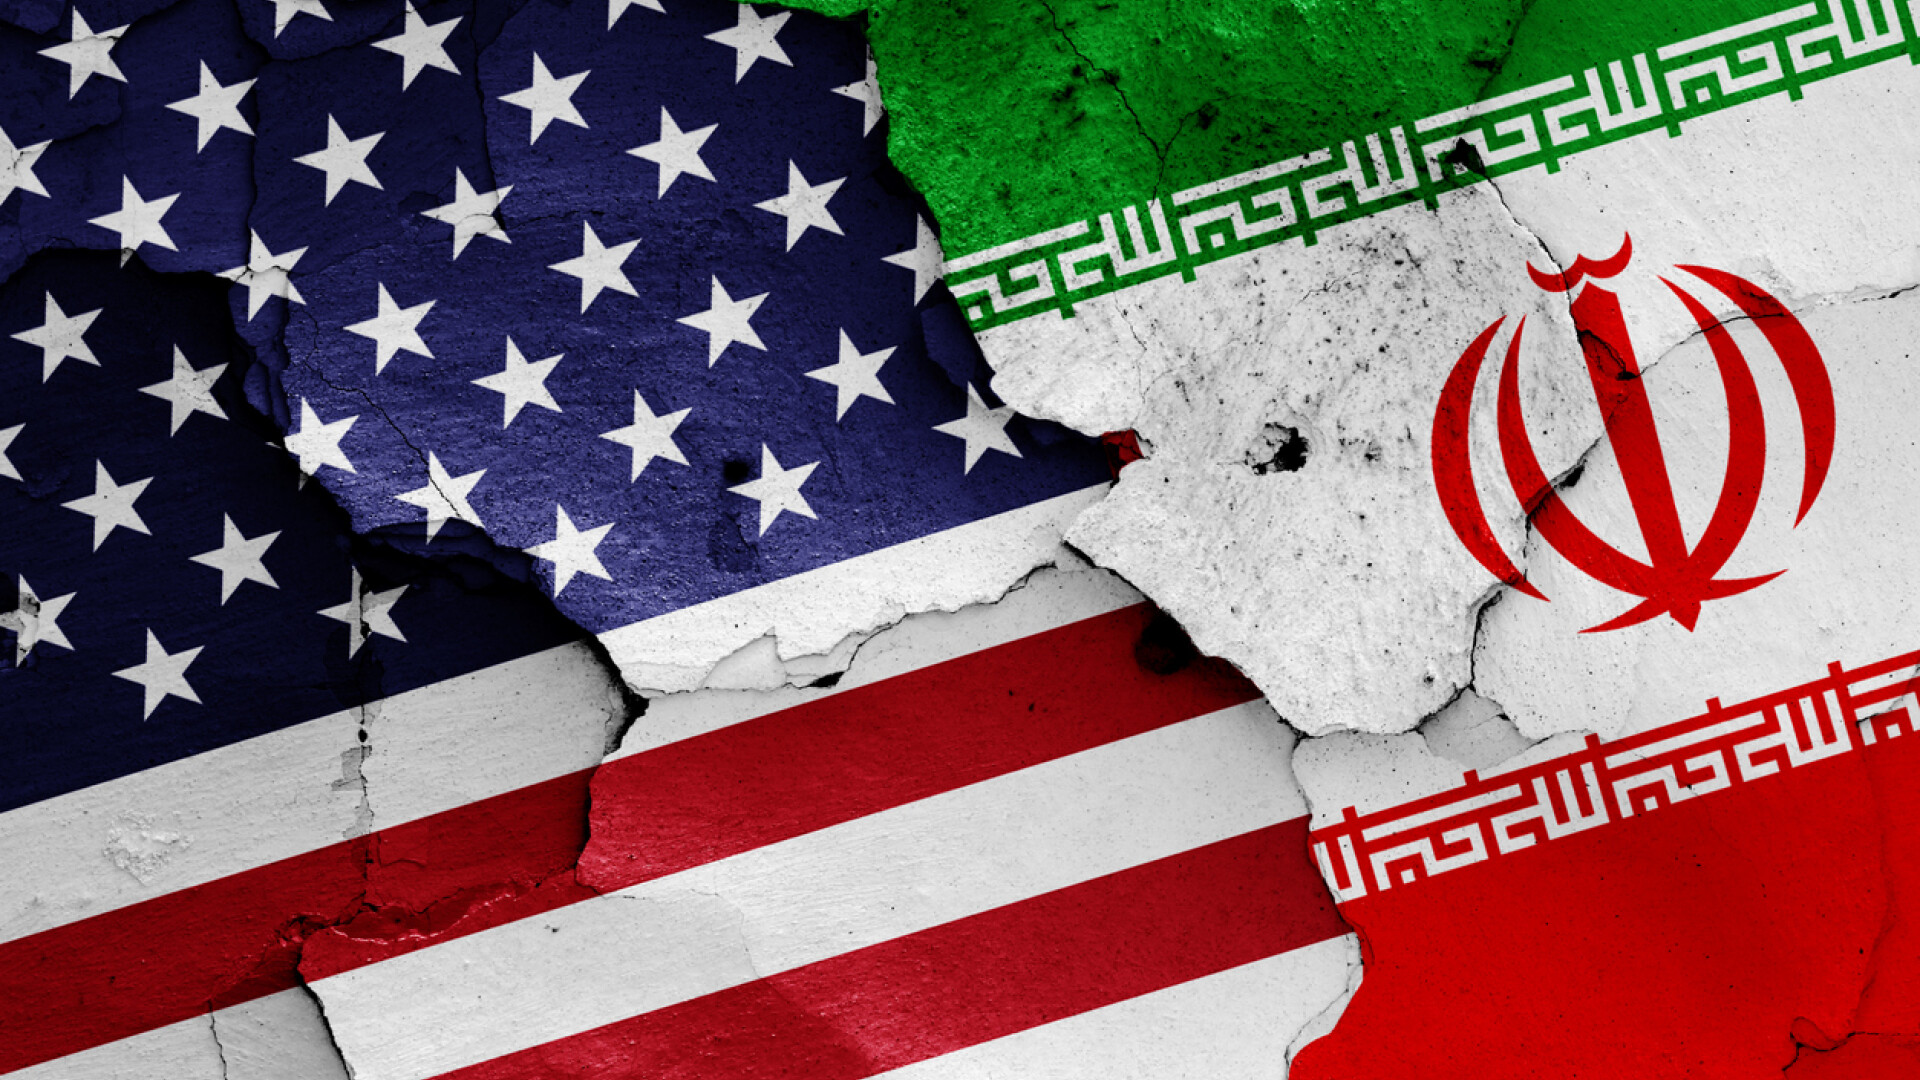 Agenţia de presă iraniană Fars anunţă că SUA i-au blocat accesul la website